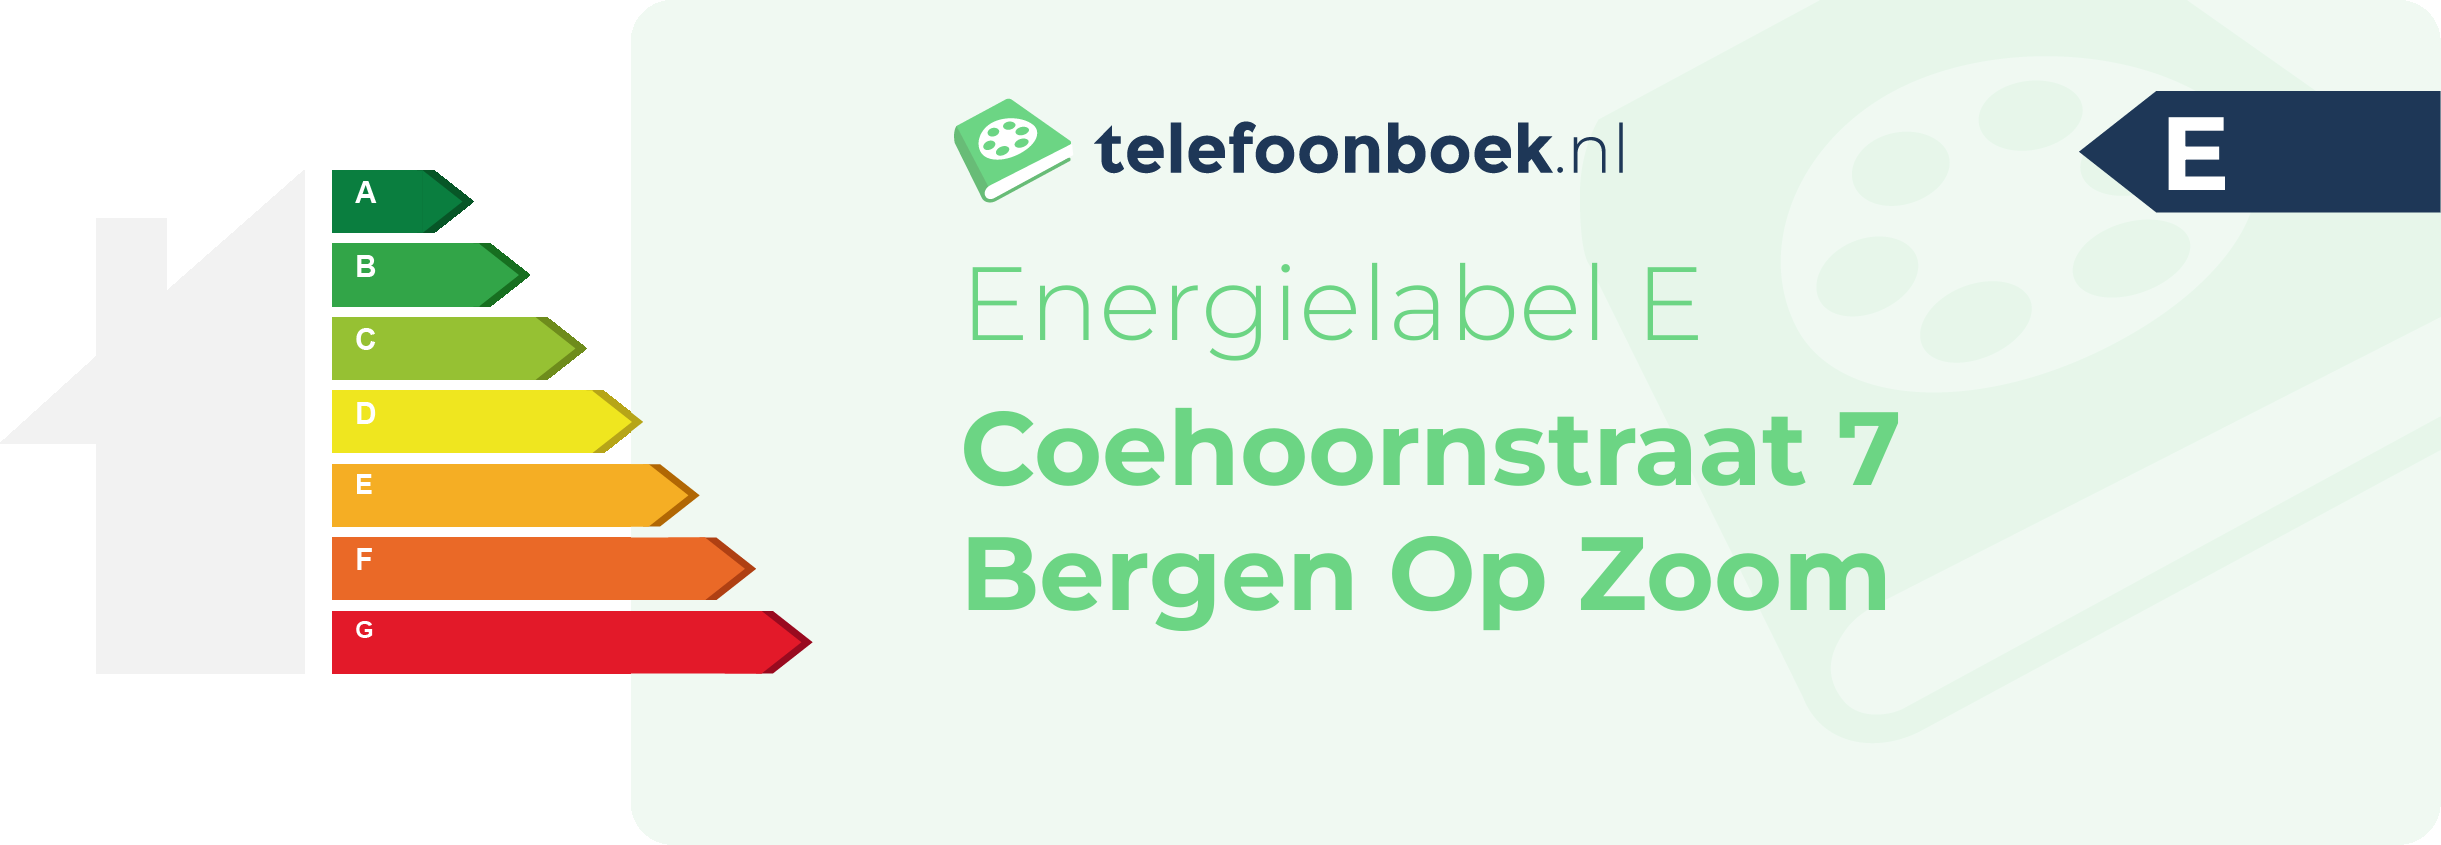 Energielabel Coehoornstraat 7 Bergen Op Zoom